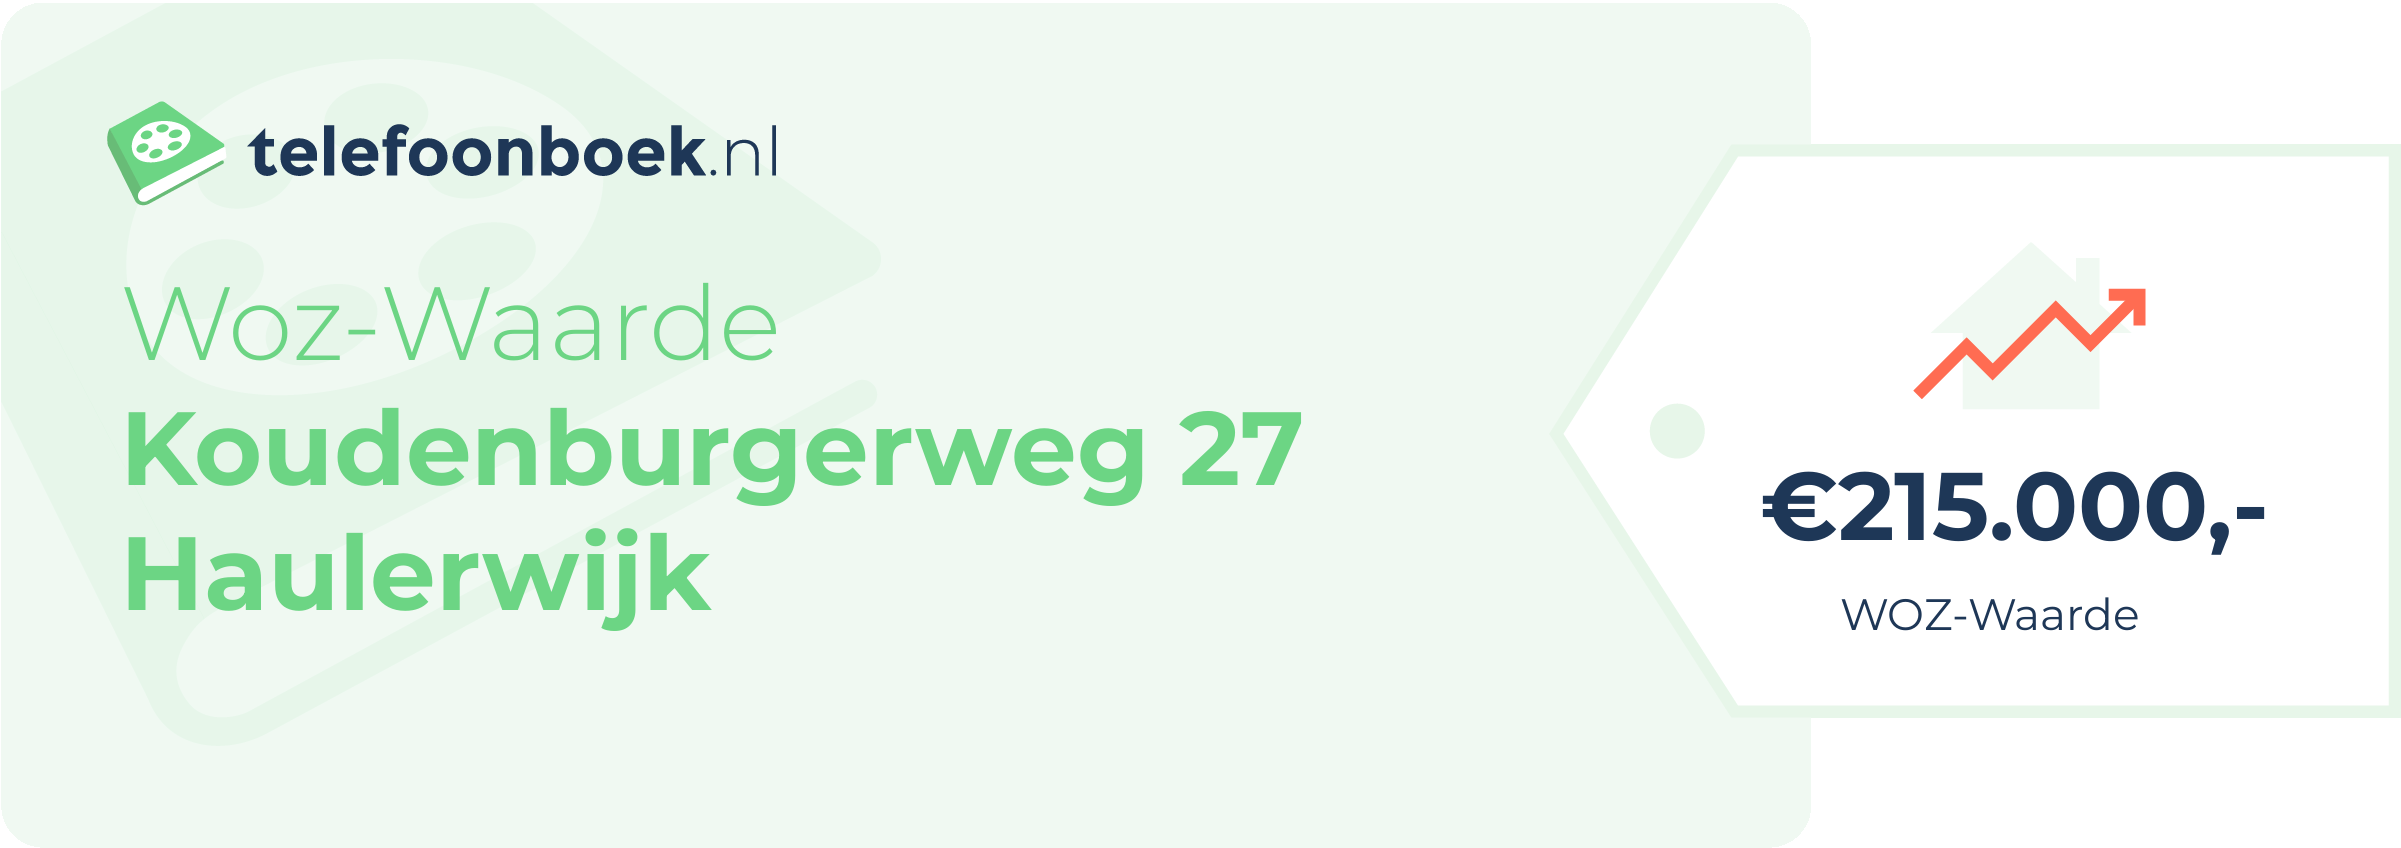 WOZ-waarde Koudenburgerweg 27 Haulerwijk